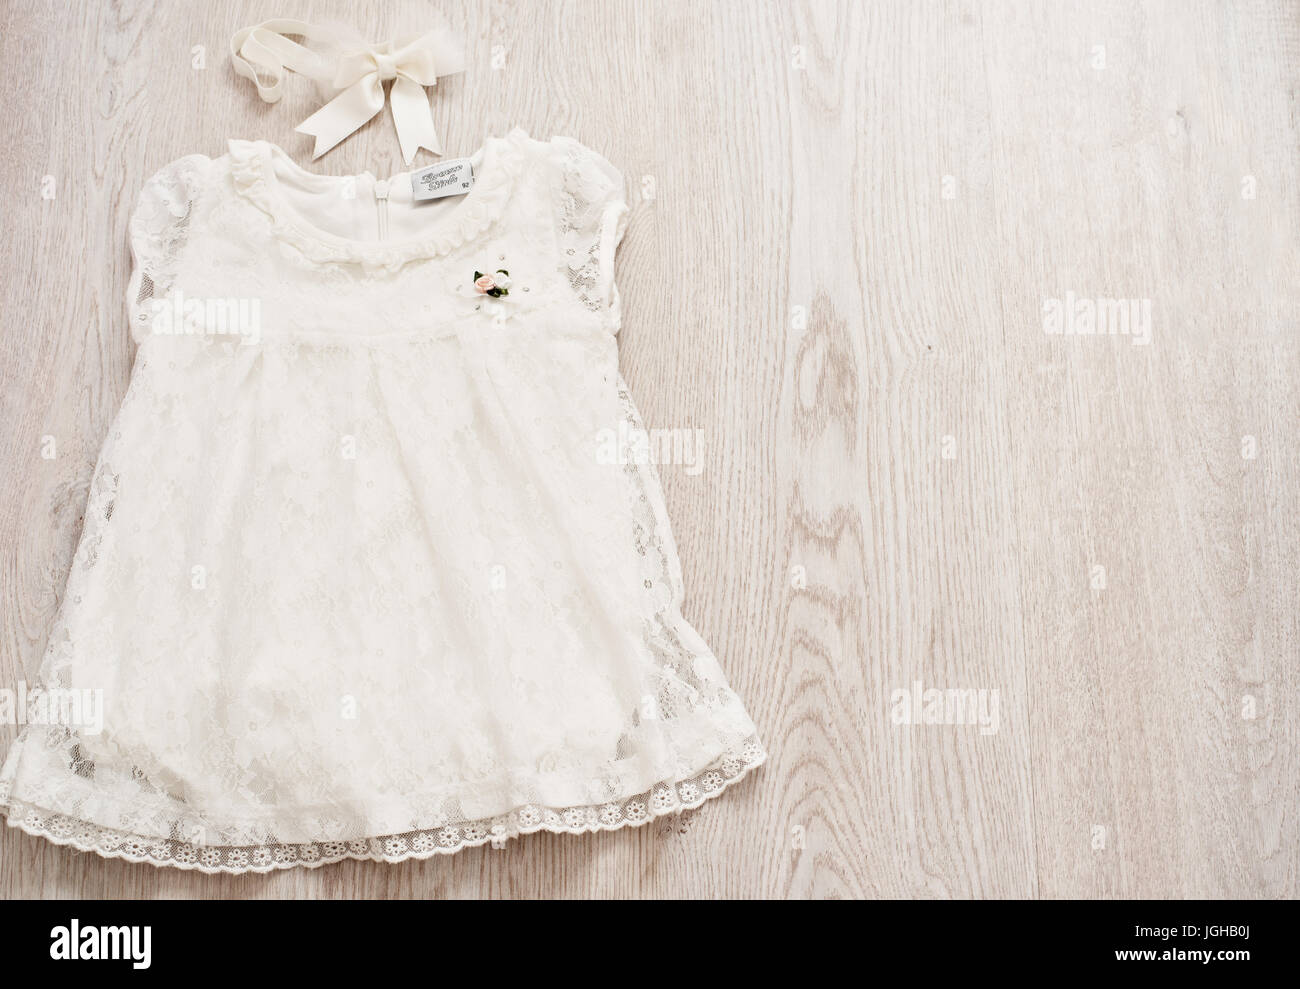 Bébé Vintage robe en dentelle blanche et Bow Headband gris clair sur un fond Wodden. Vue de dessus, Copy Space Banque D'Images